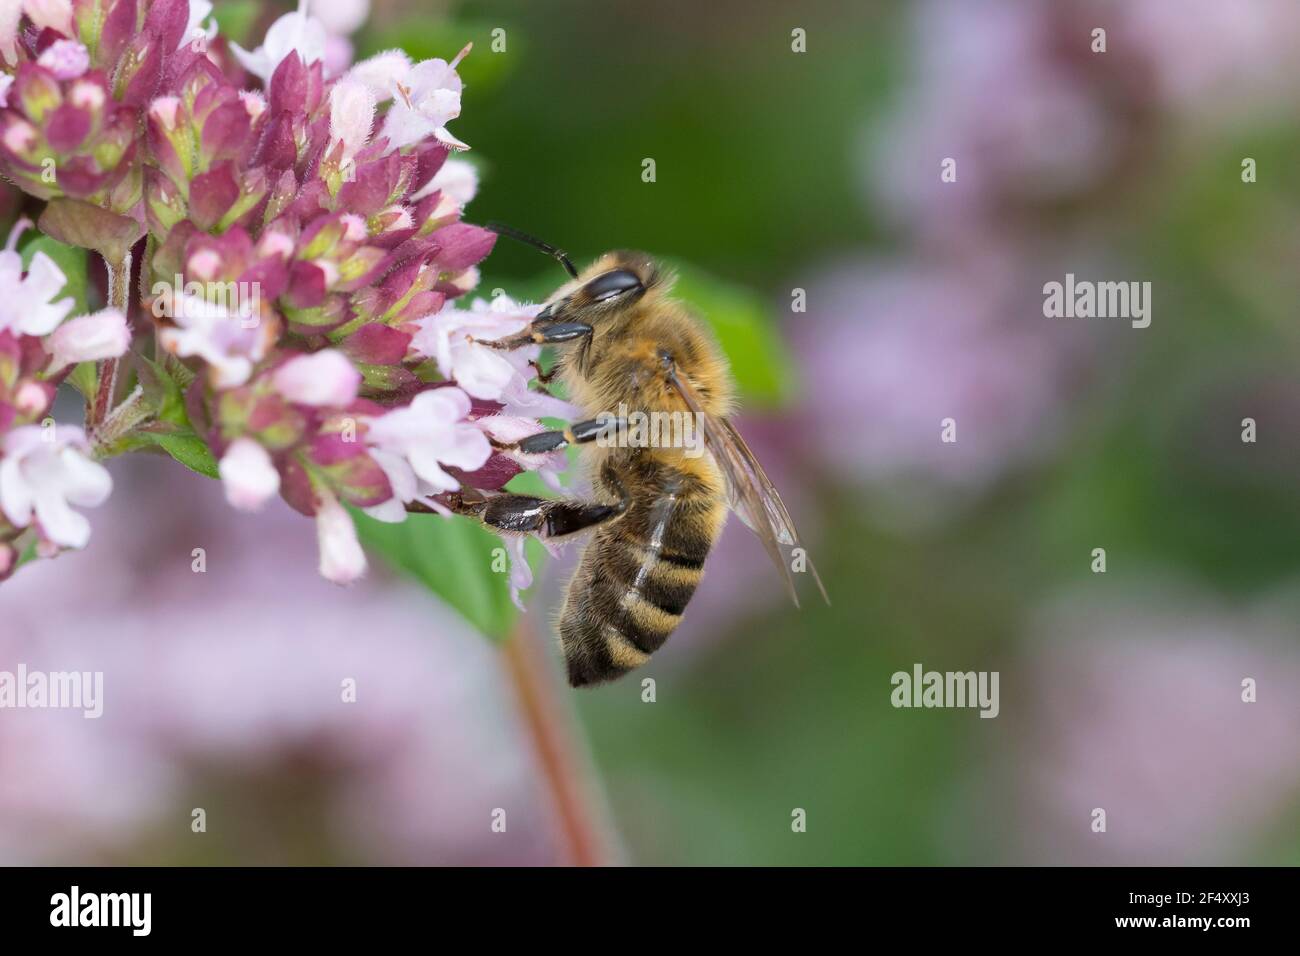 Honigbiene, Honig-Biene, Europäische Honigbiene, Westliche Honigbiene, Biene, Bienen, Apis mellifera, Apis mellifica, Blütenbesuch auf Wilder Dost, o. Foto de stock